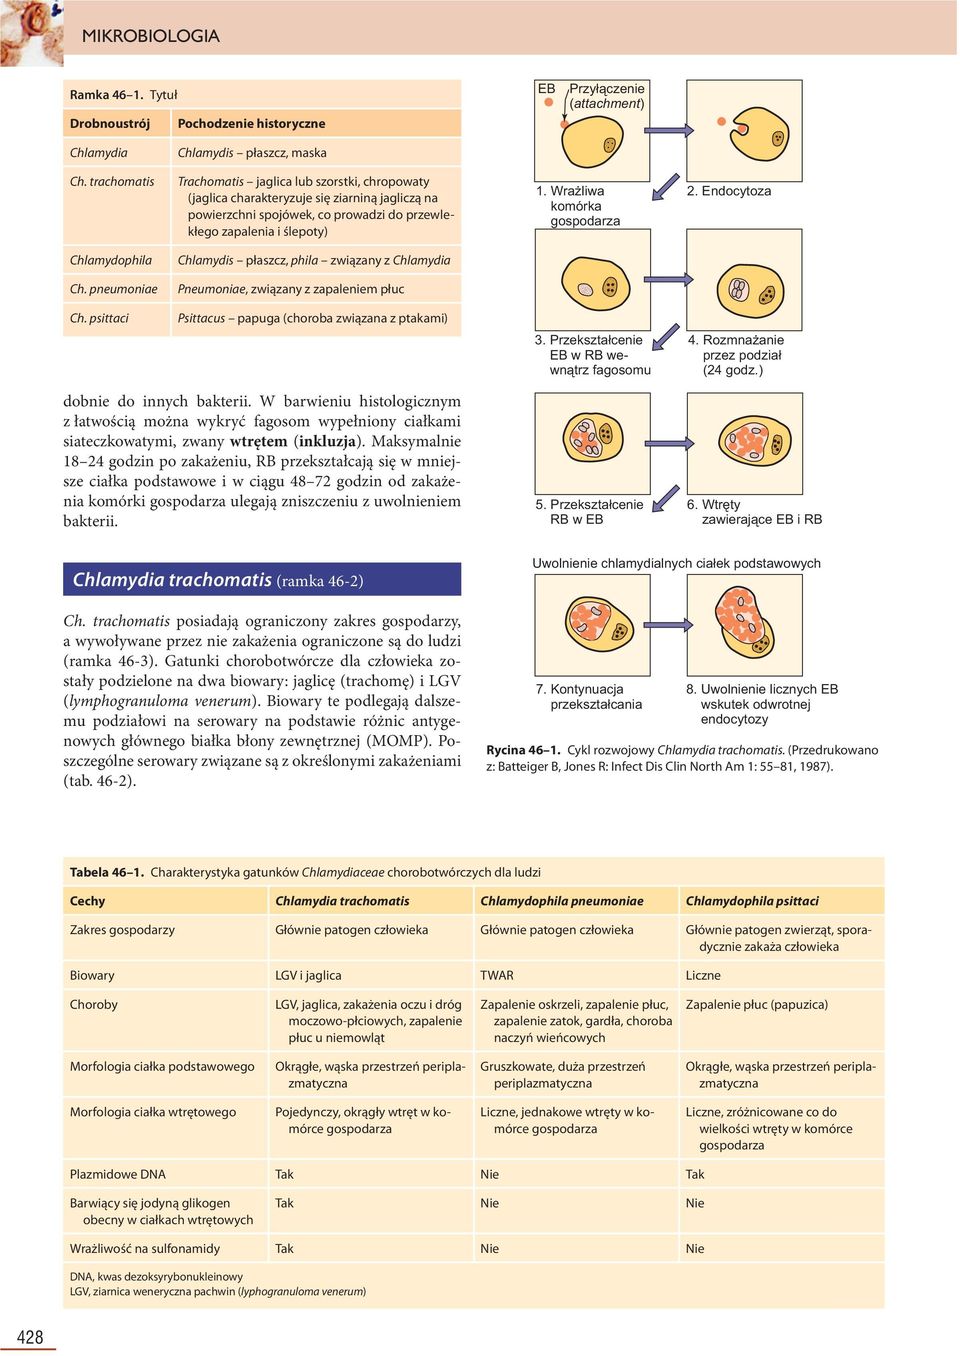 Wrażliwa komórka gospodarza 2. Endocytoza Chlamydophila Chlamydis płaszcz, phila związany z Chlamydia Ch. pneumoniae Pneumoniae, związany z zapaleniem płuc Ch.